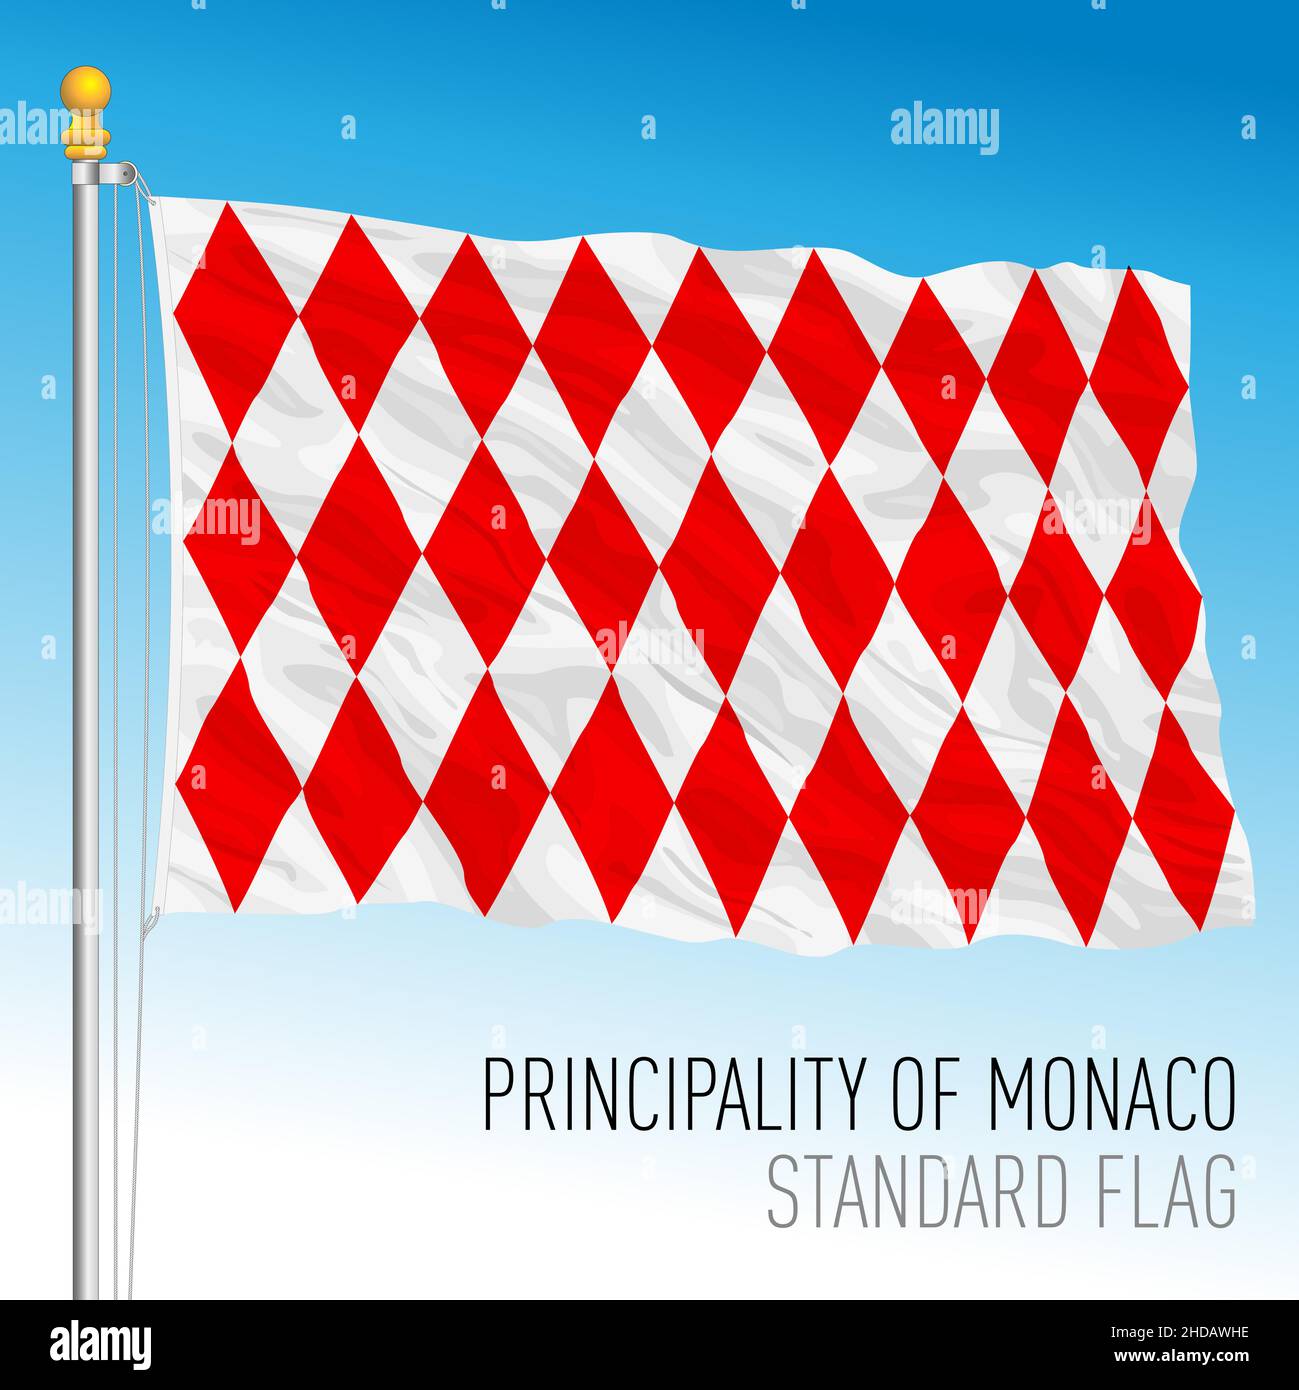 Fürstentum Monaco Standard-Nationalflagge, europäisches Land, Vektordarstellung Stock Vektor